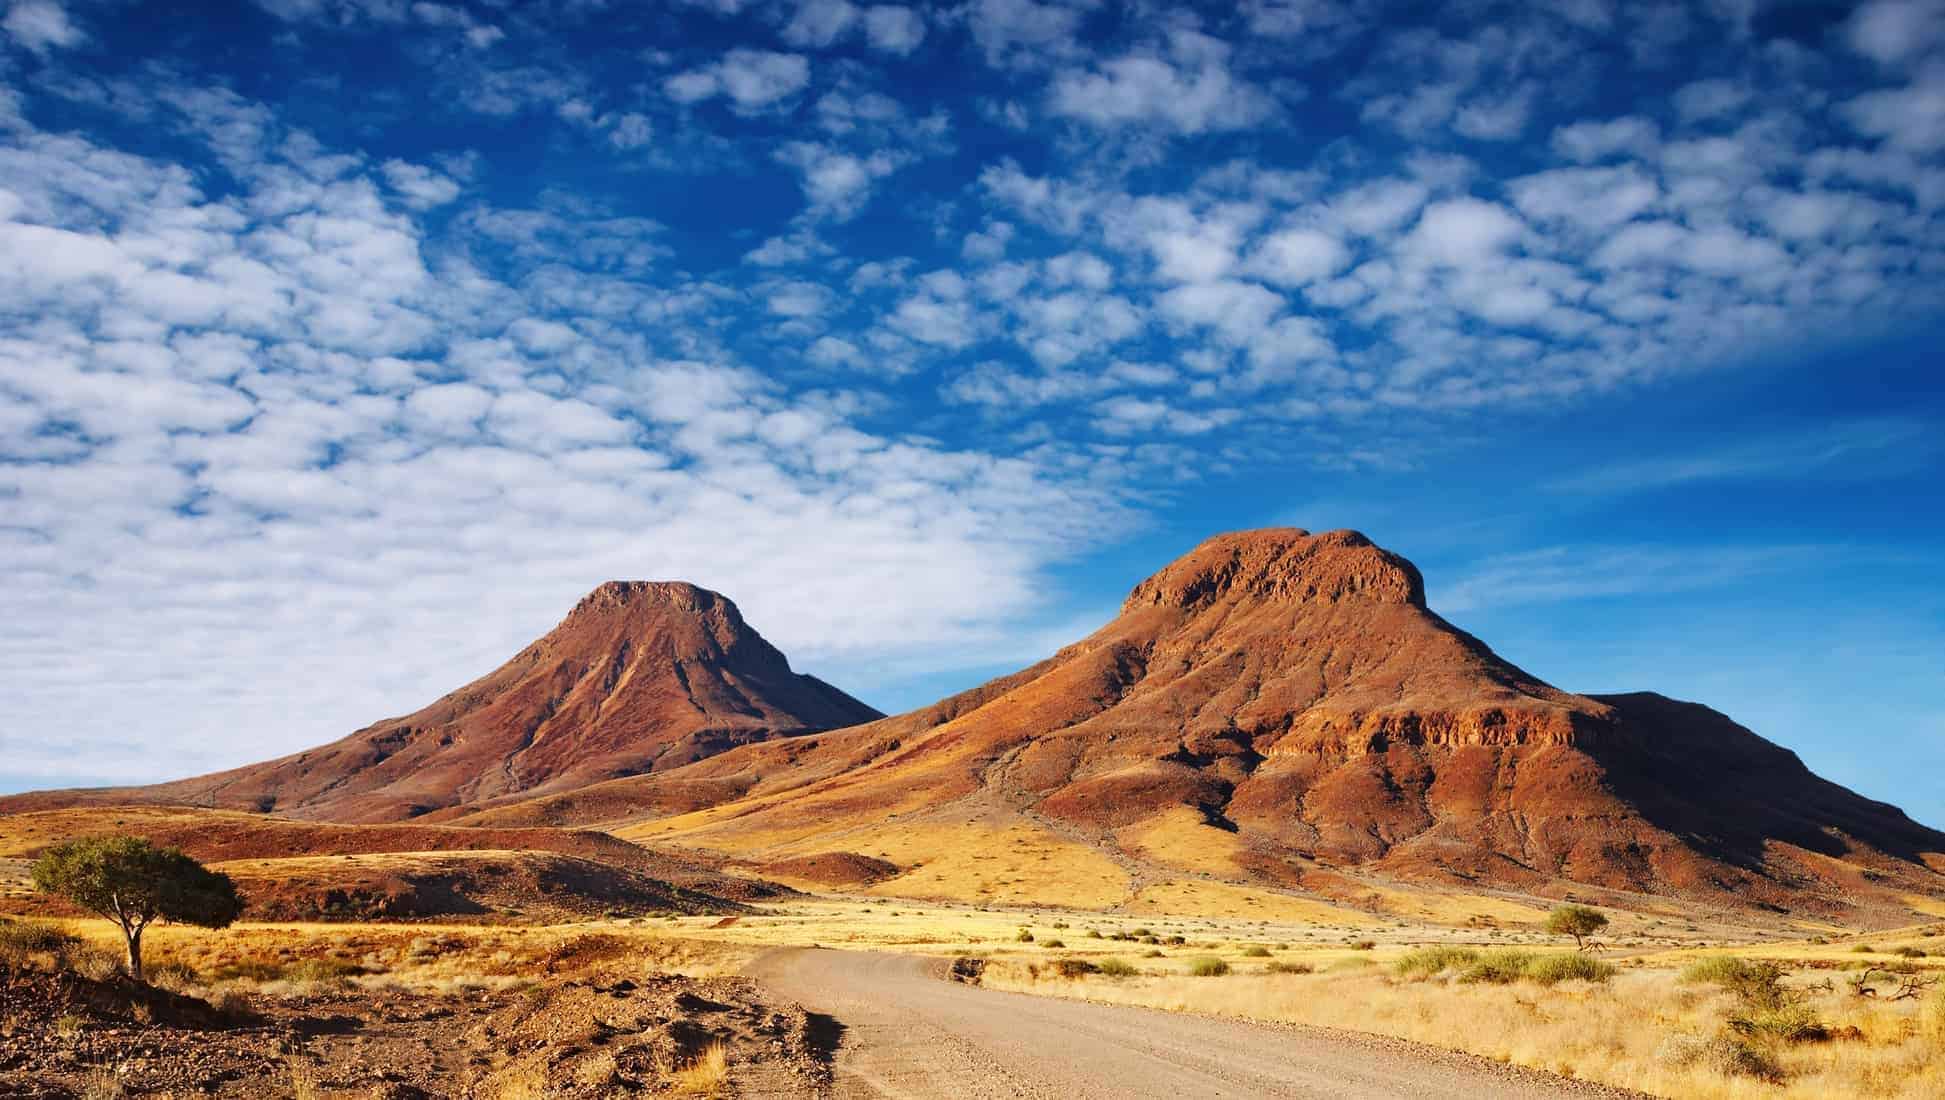 Road in the Kalahari Desert, Namibia